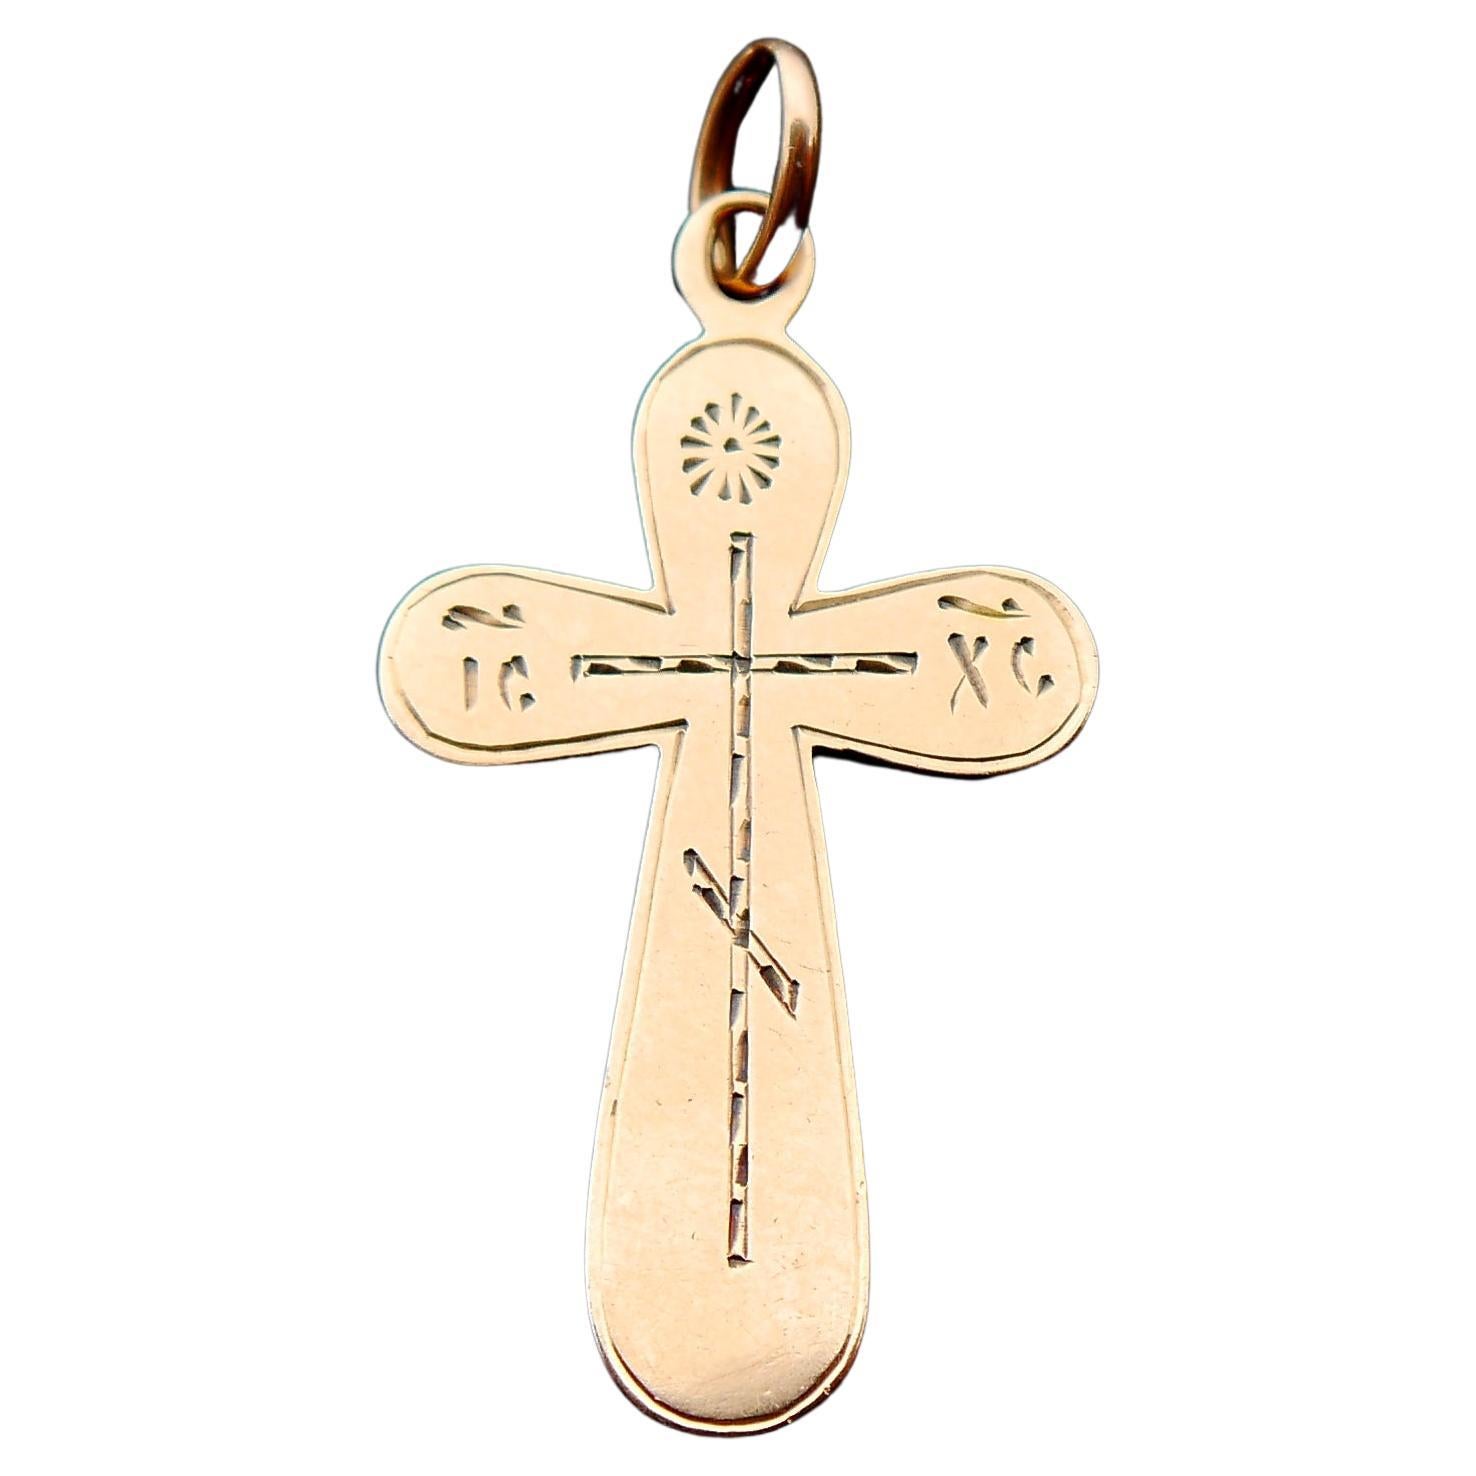 Russisches kaiserlich-orthodoxes orthodoxes Kreuzkreuz-Kreuz-Kreuzkreuz, Massiv 56 / 14K Gold /4,5cm / 4.2gr